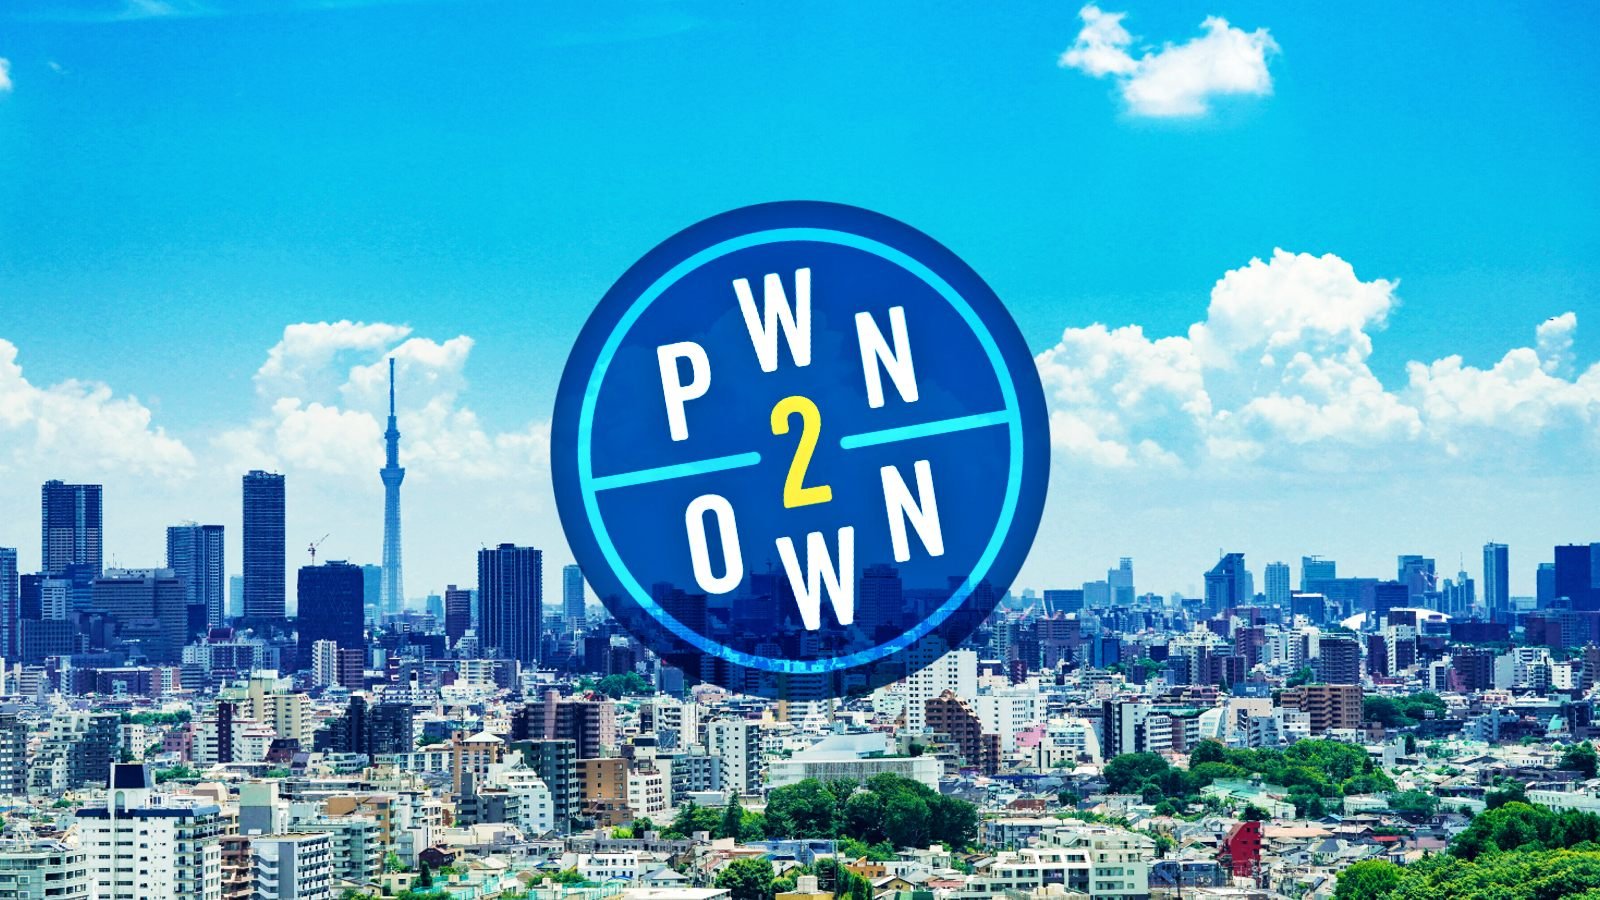 Pwn2Own__Tokyo